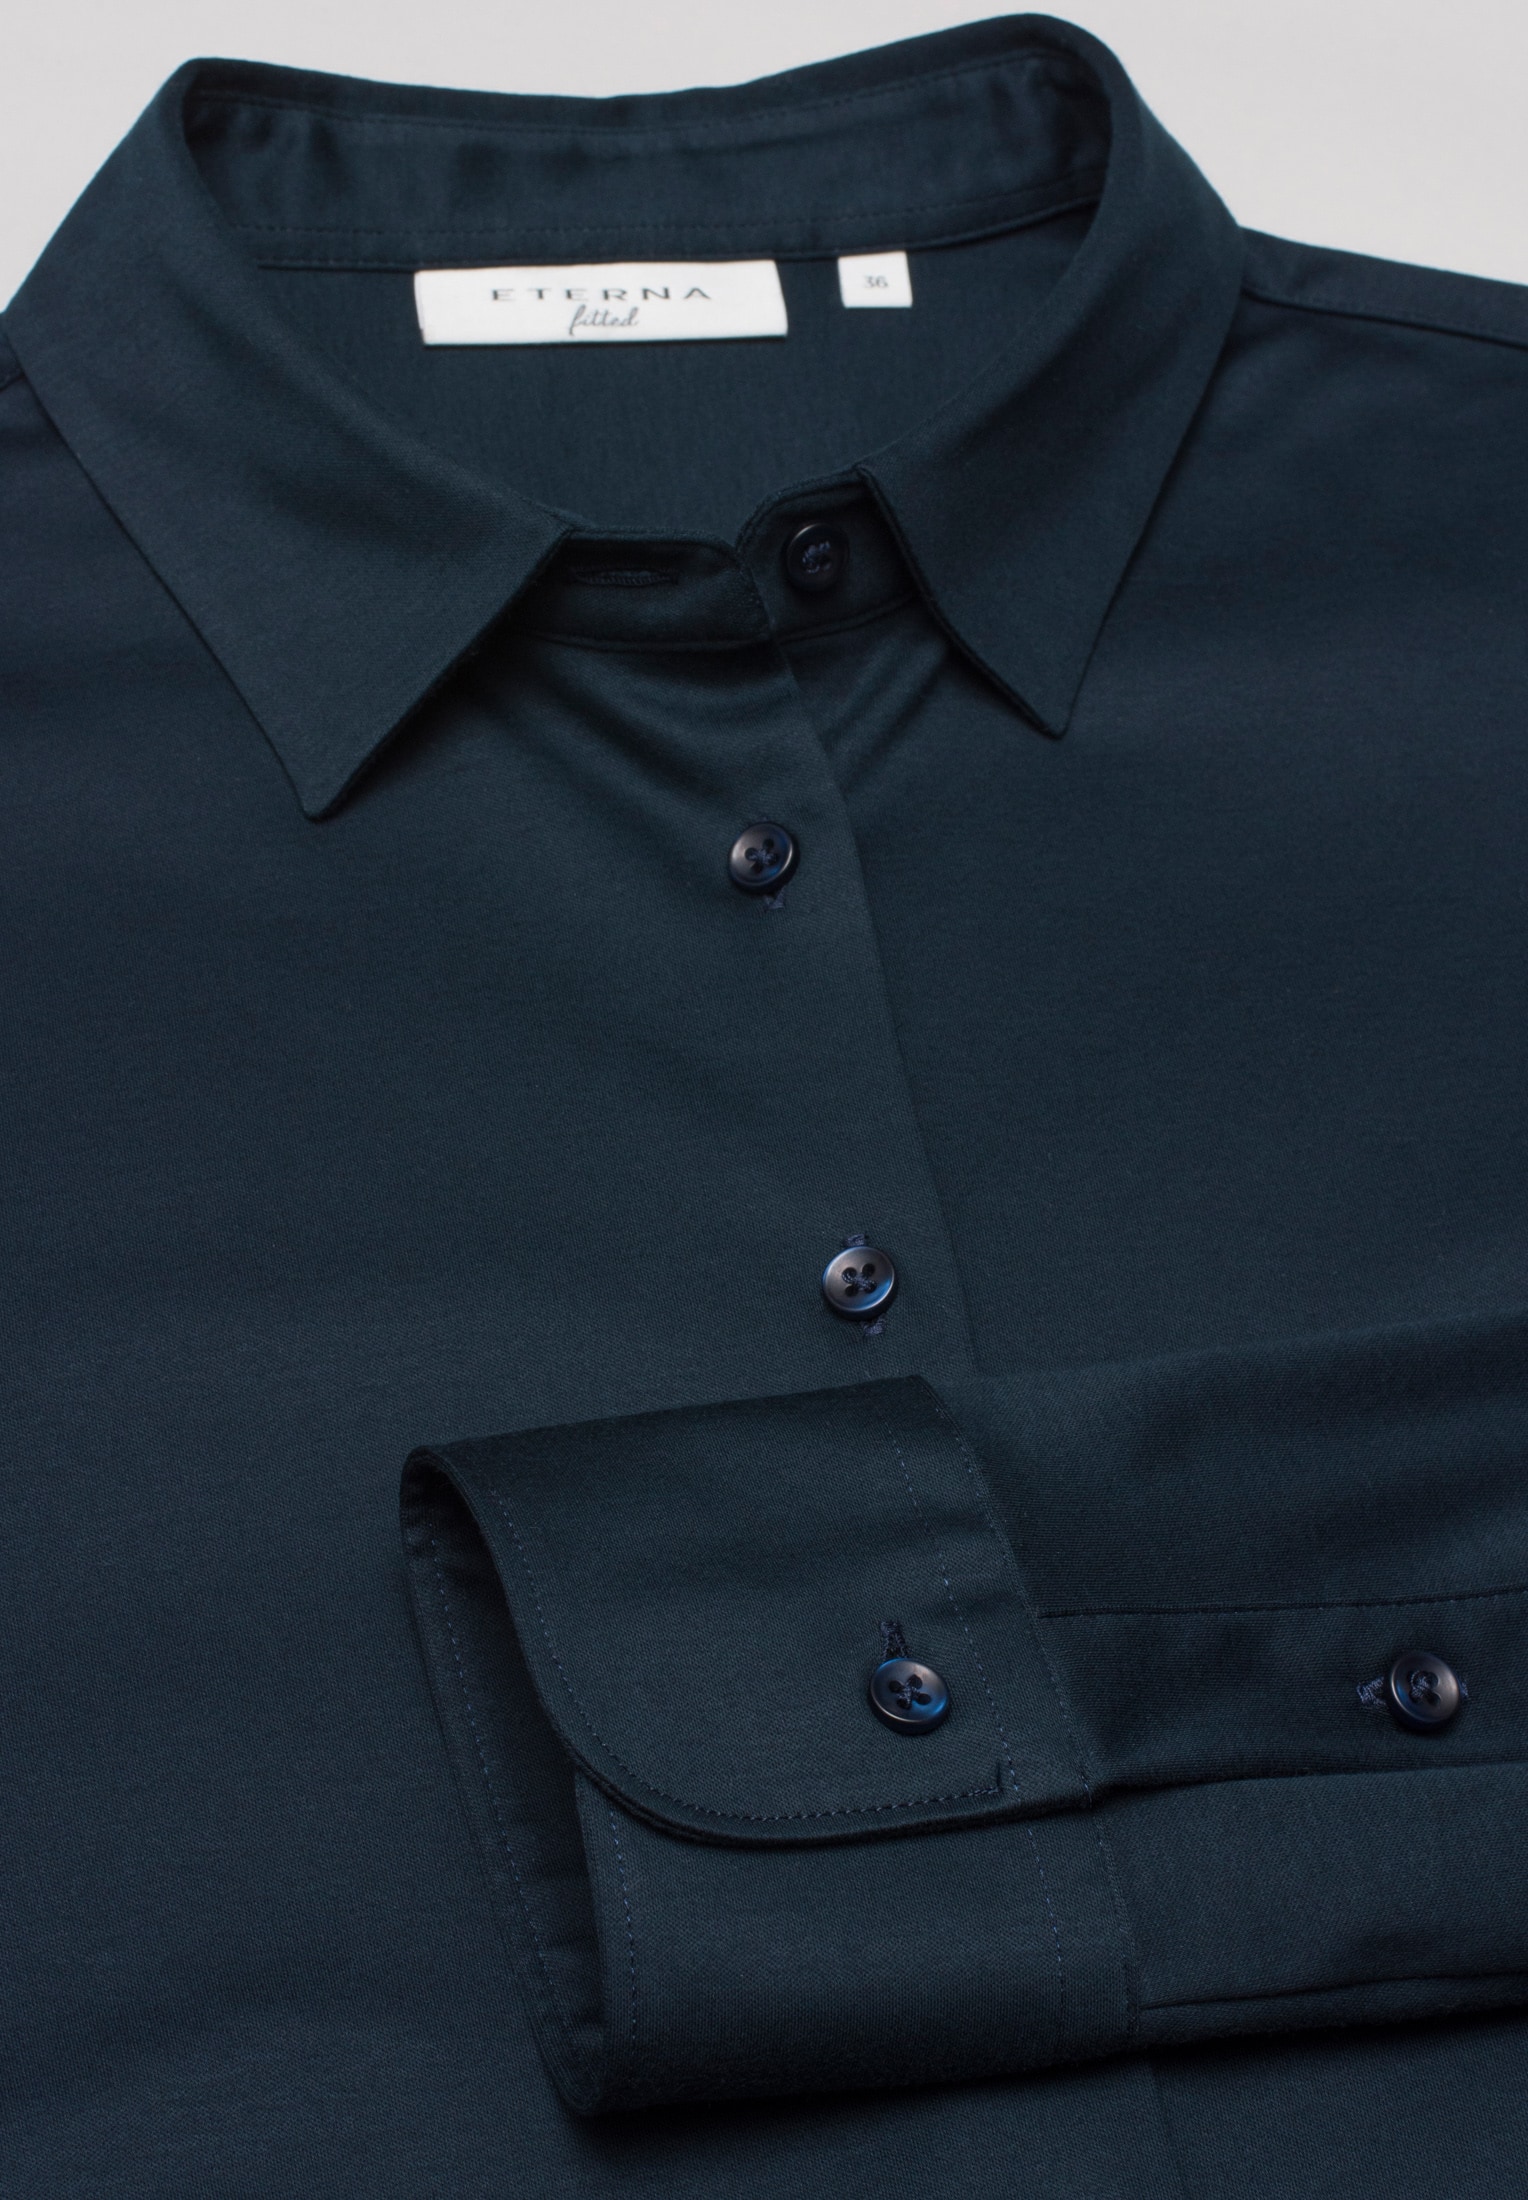 Jersey Shirt | unifarben | navy Bluse 44 | in navy Langarm 2BL00229-01-91-44-1/1 